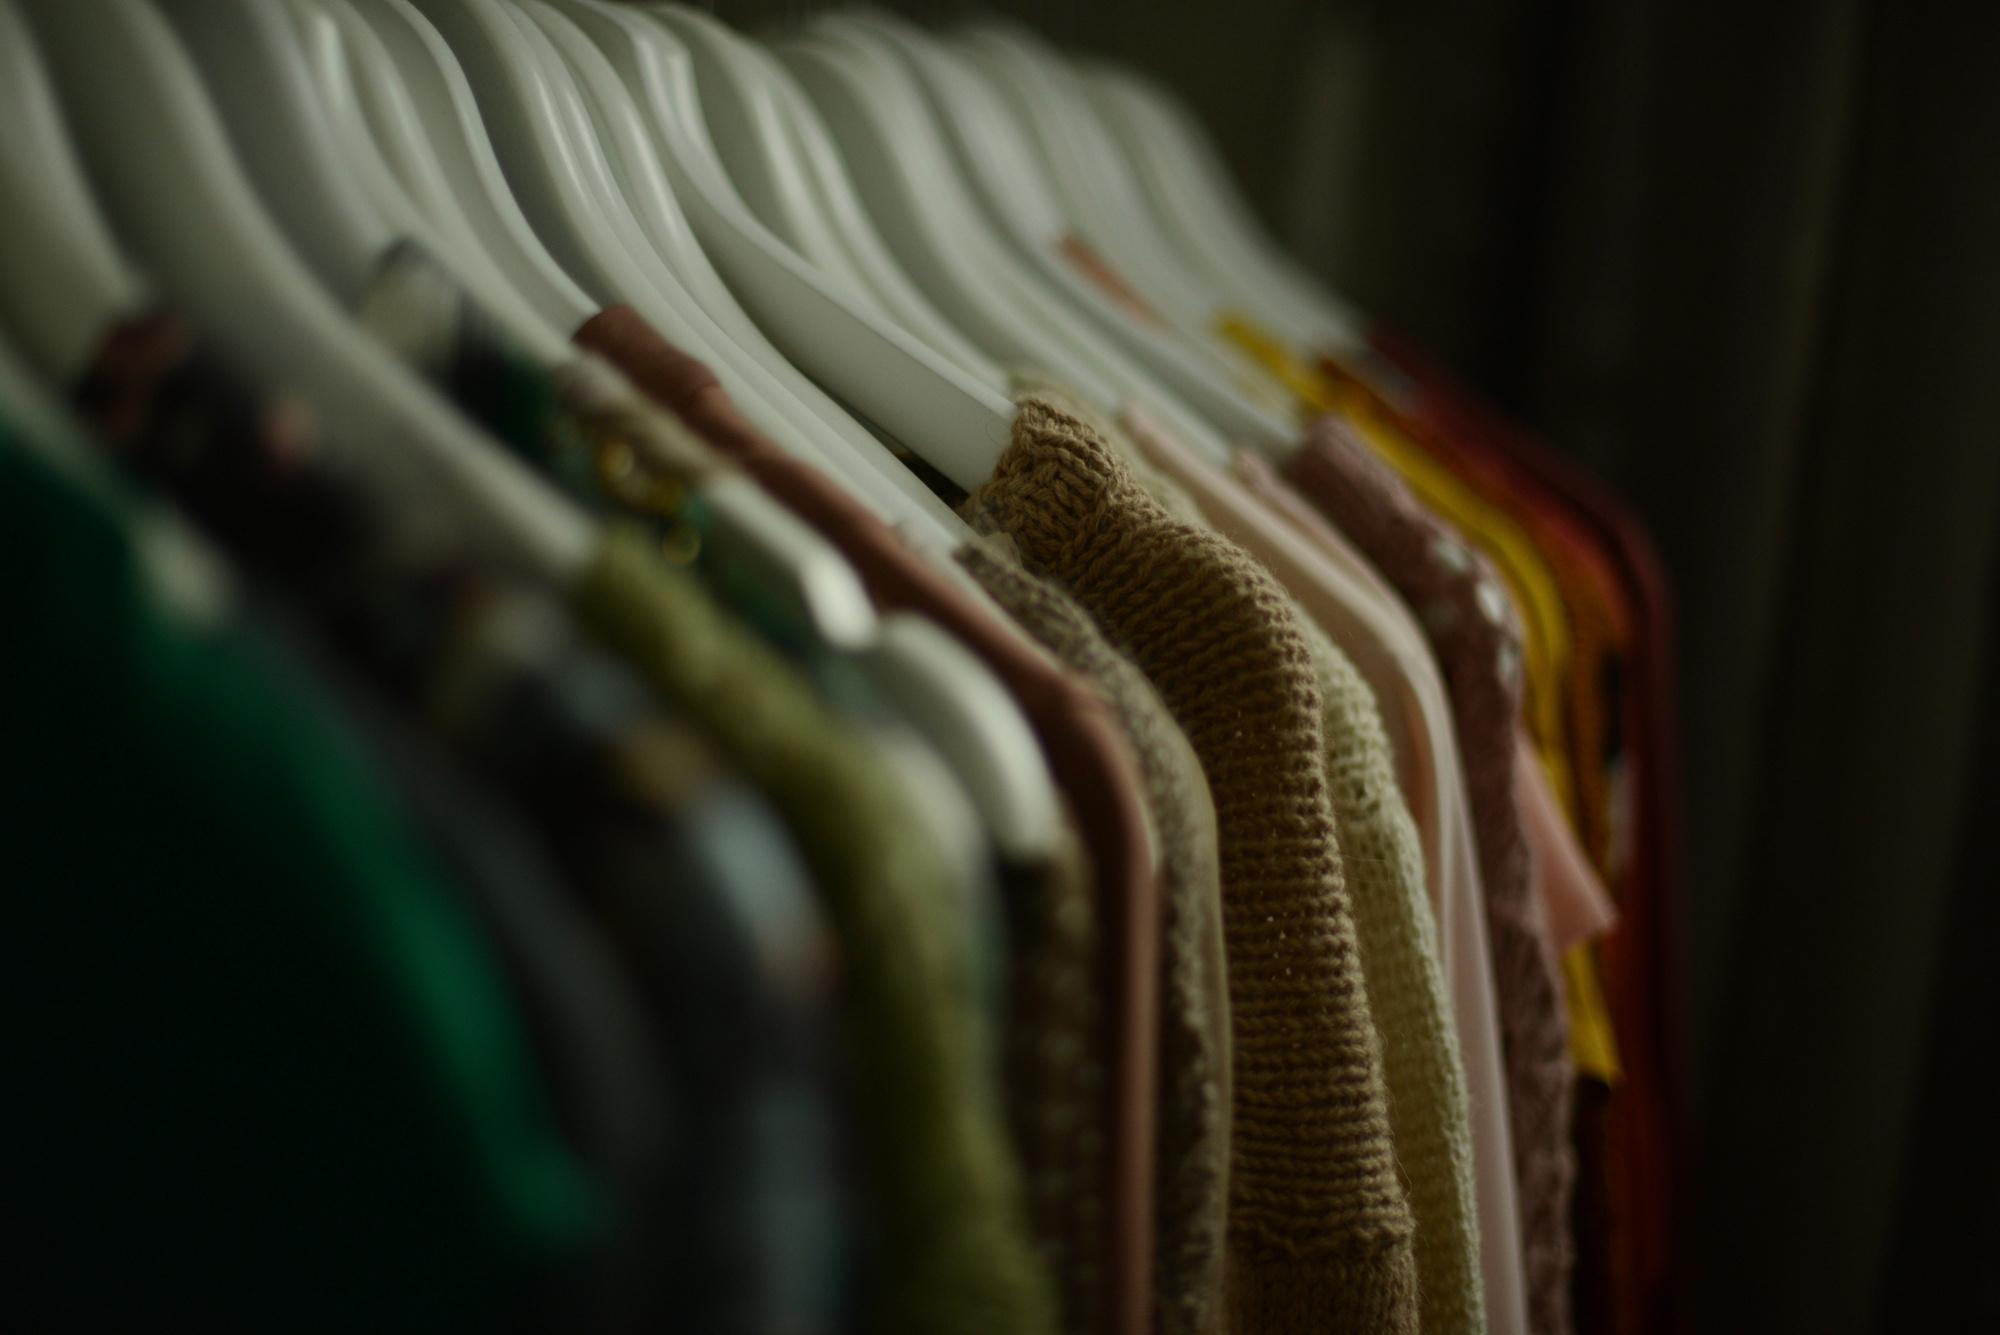 Vinted et autres: Astuces pour bien vendre ses vêtements en ligne